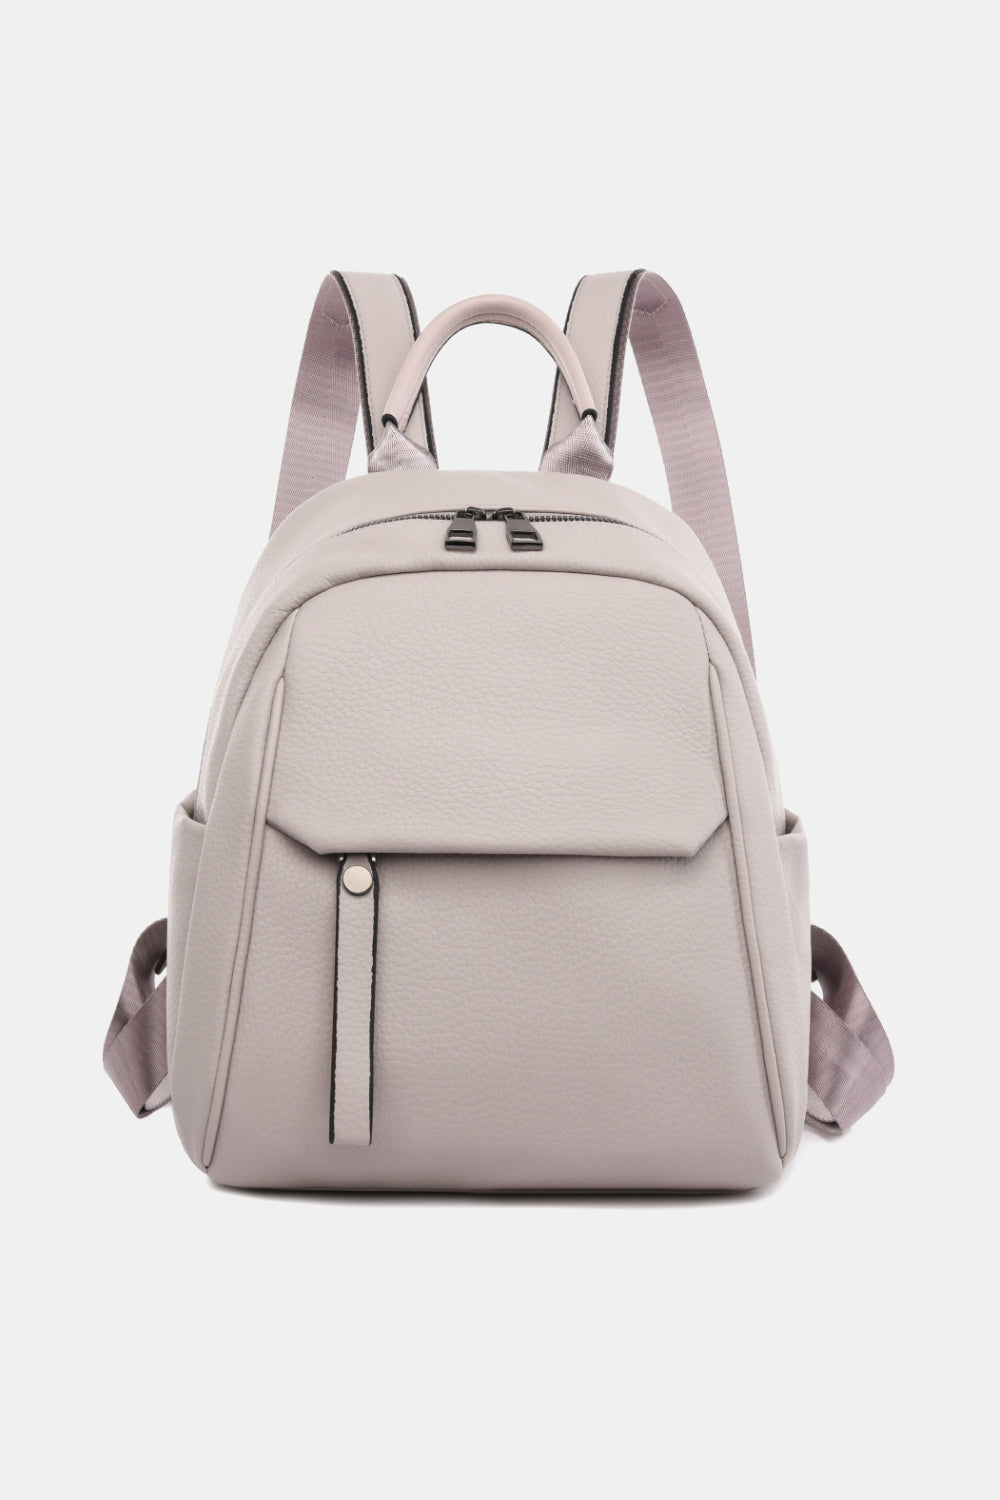 Lavender Medium PU Leather Backpack Handbags